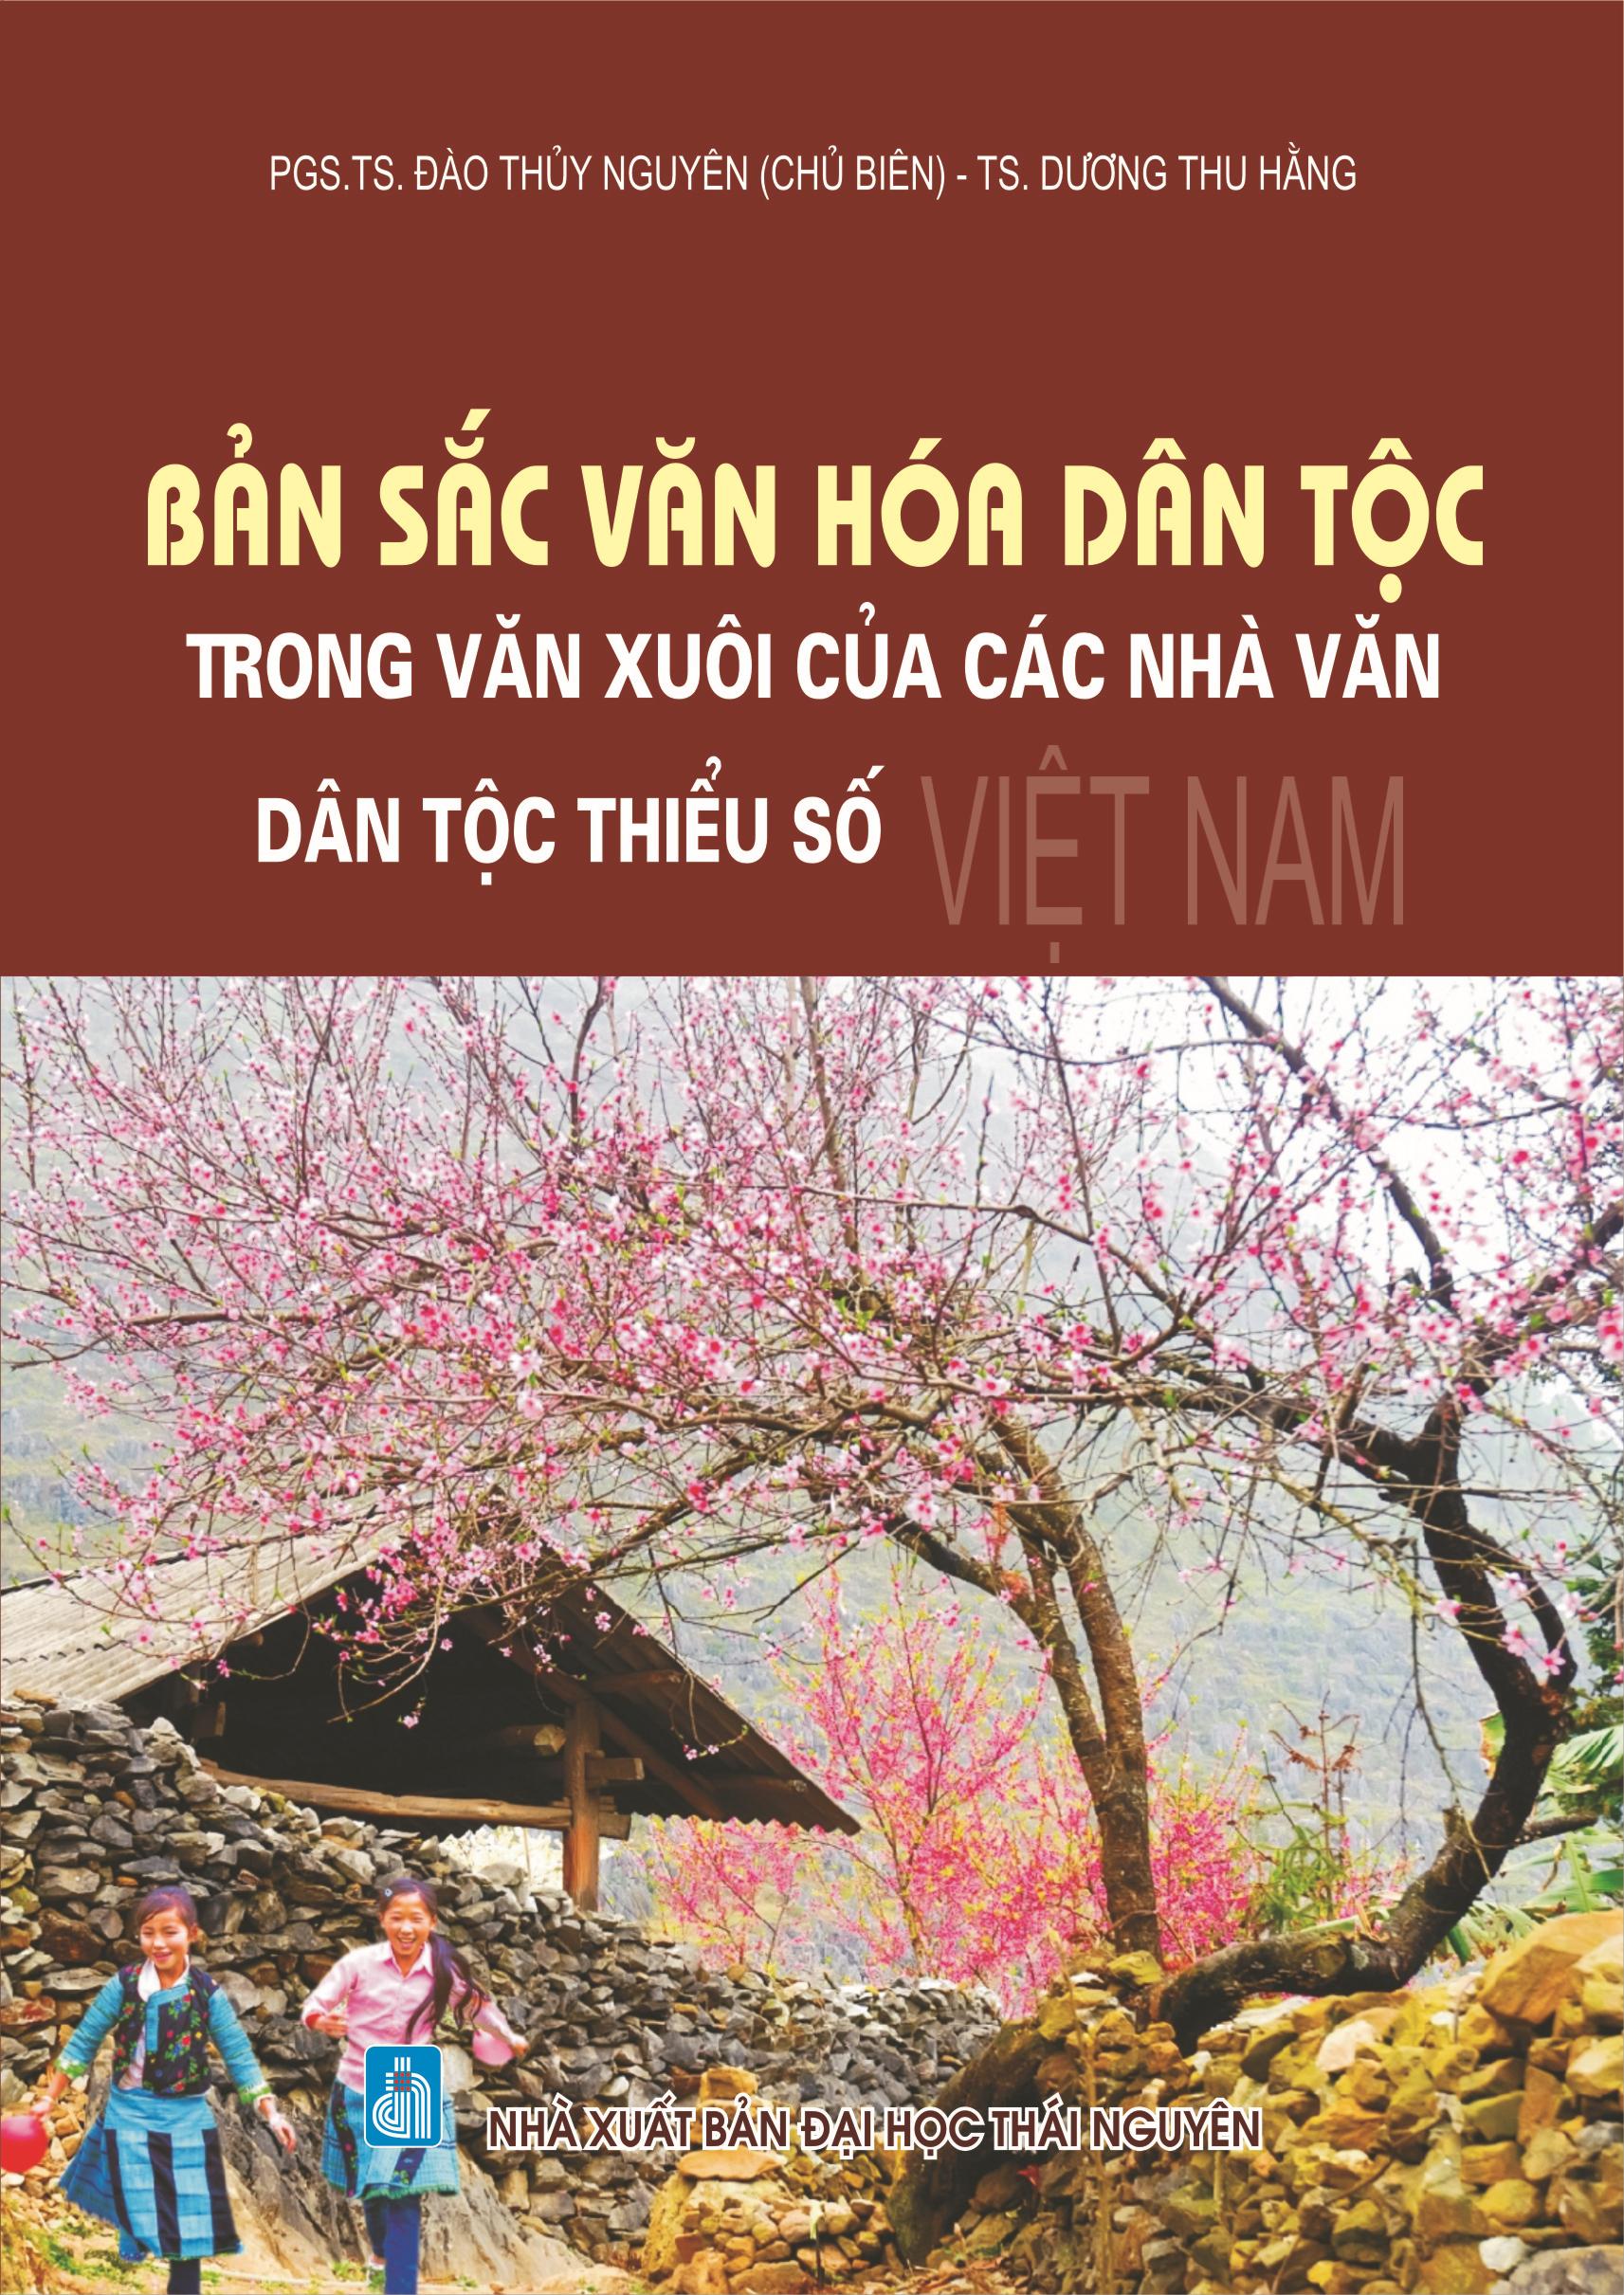 Bản sắc văn hóa dân tộc trong văn xuôi của các nhà văn dân tộc thiểu số Việt Nam